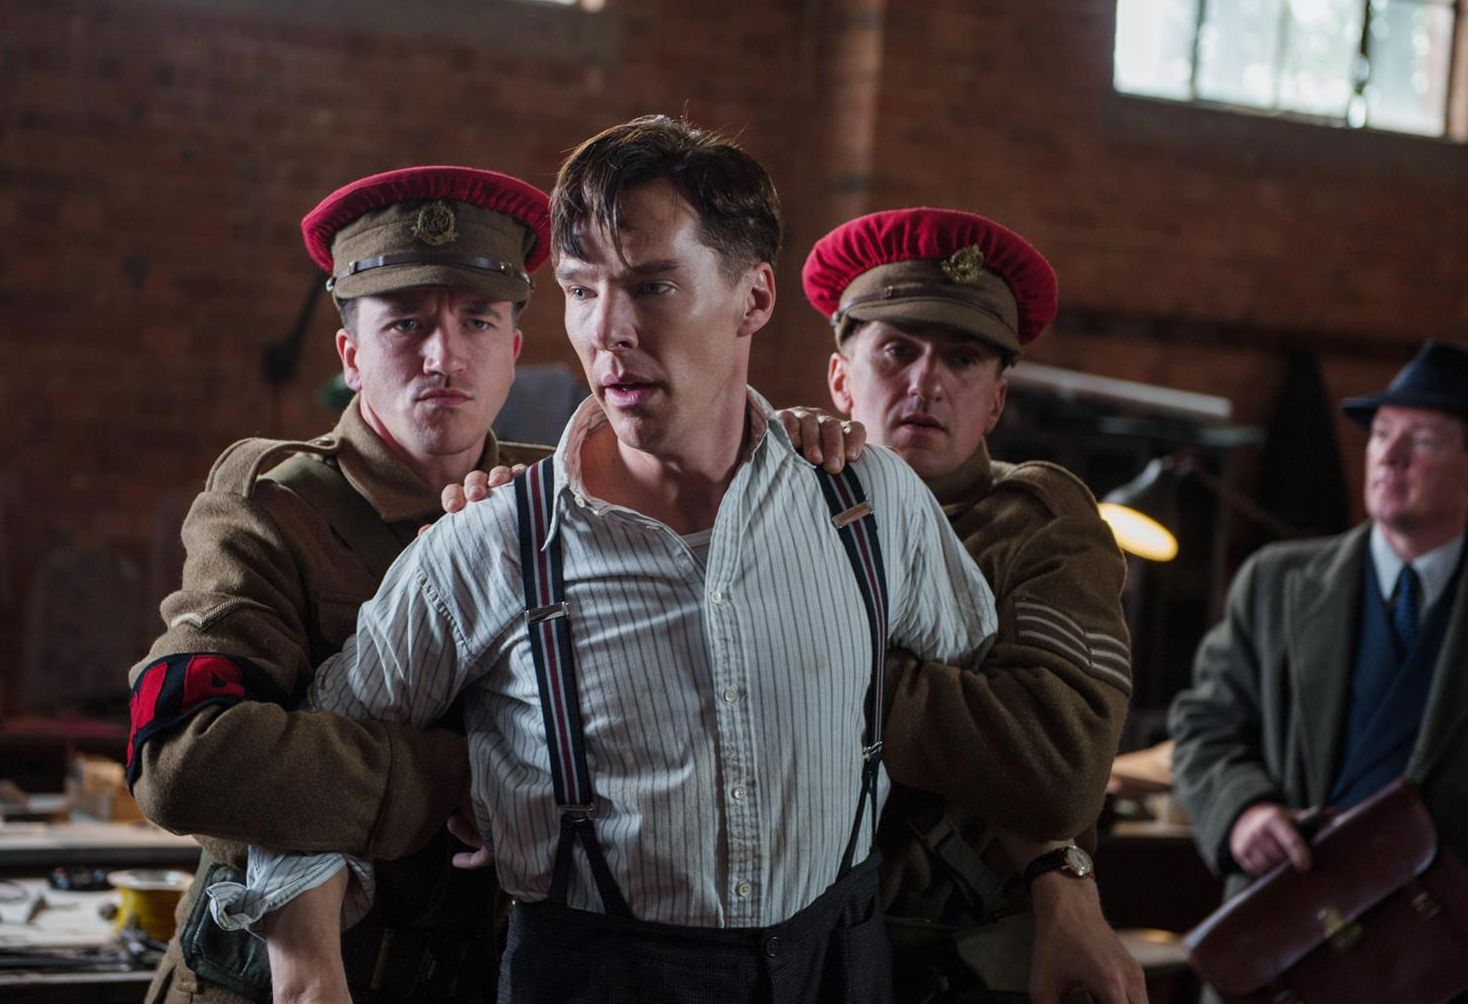 Benedict Cumberbatch under arrest in The Imitation Game